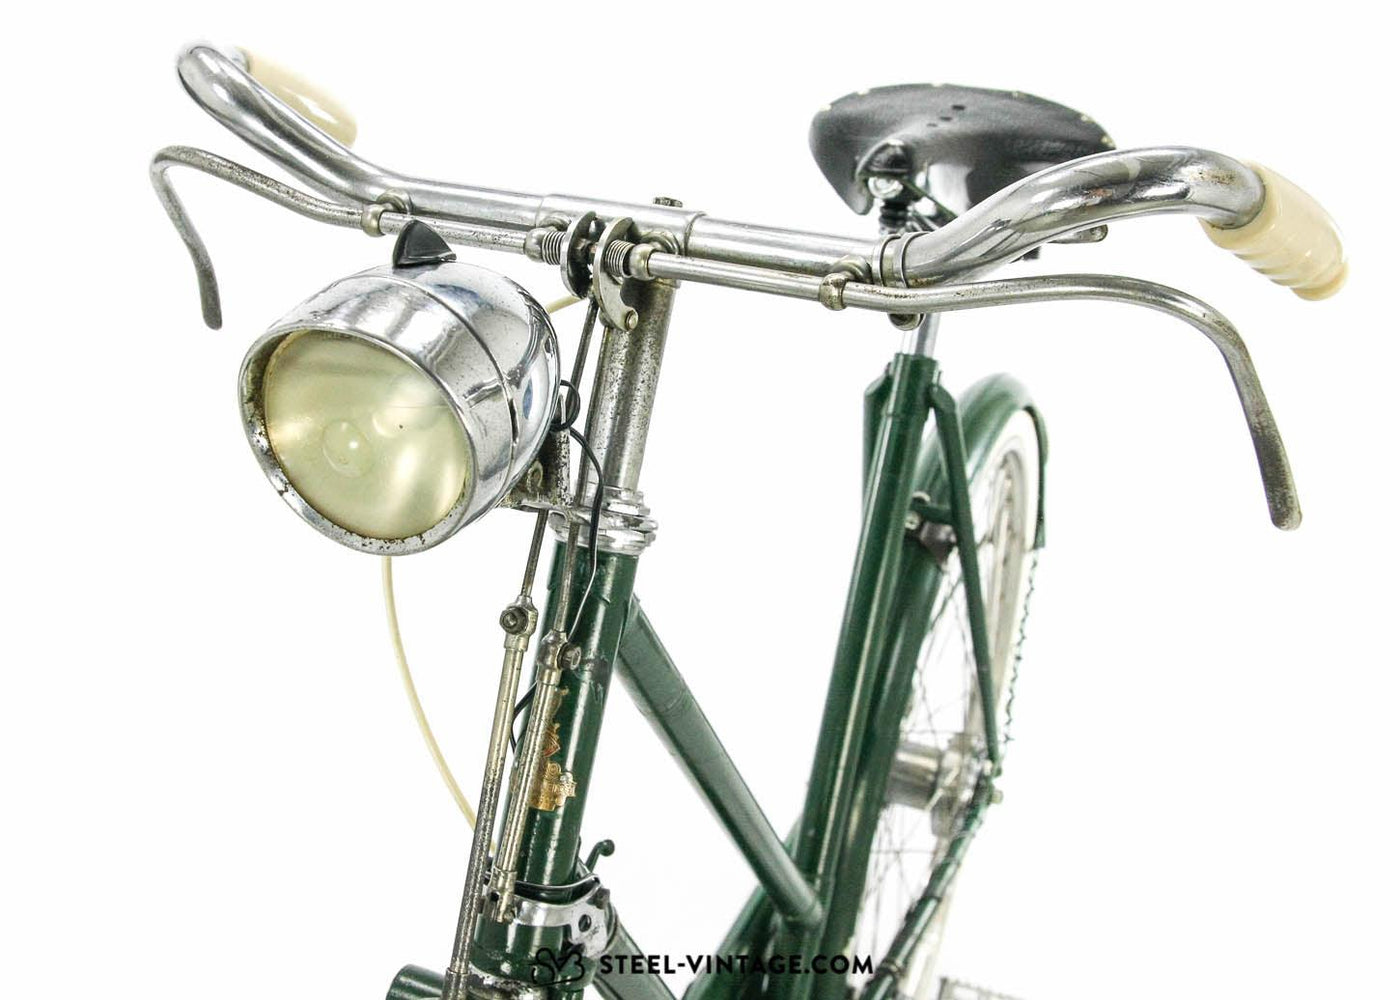 Raleigh Superbe Dawn Tourist 1949 - Steel Vintage Bikes